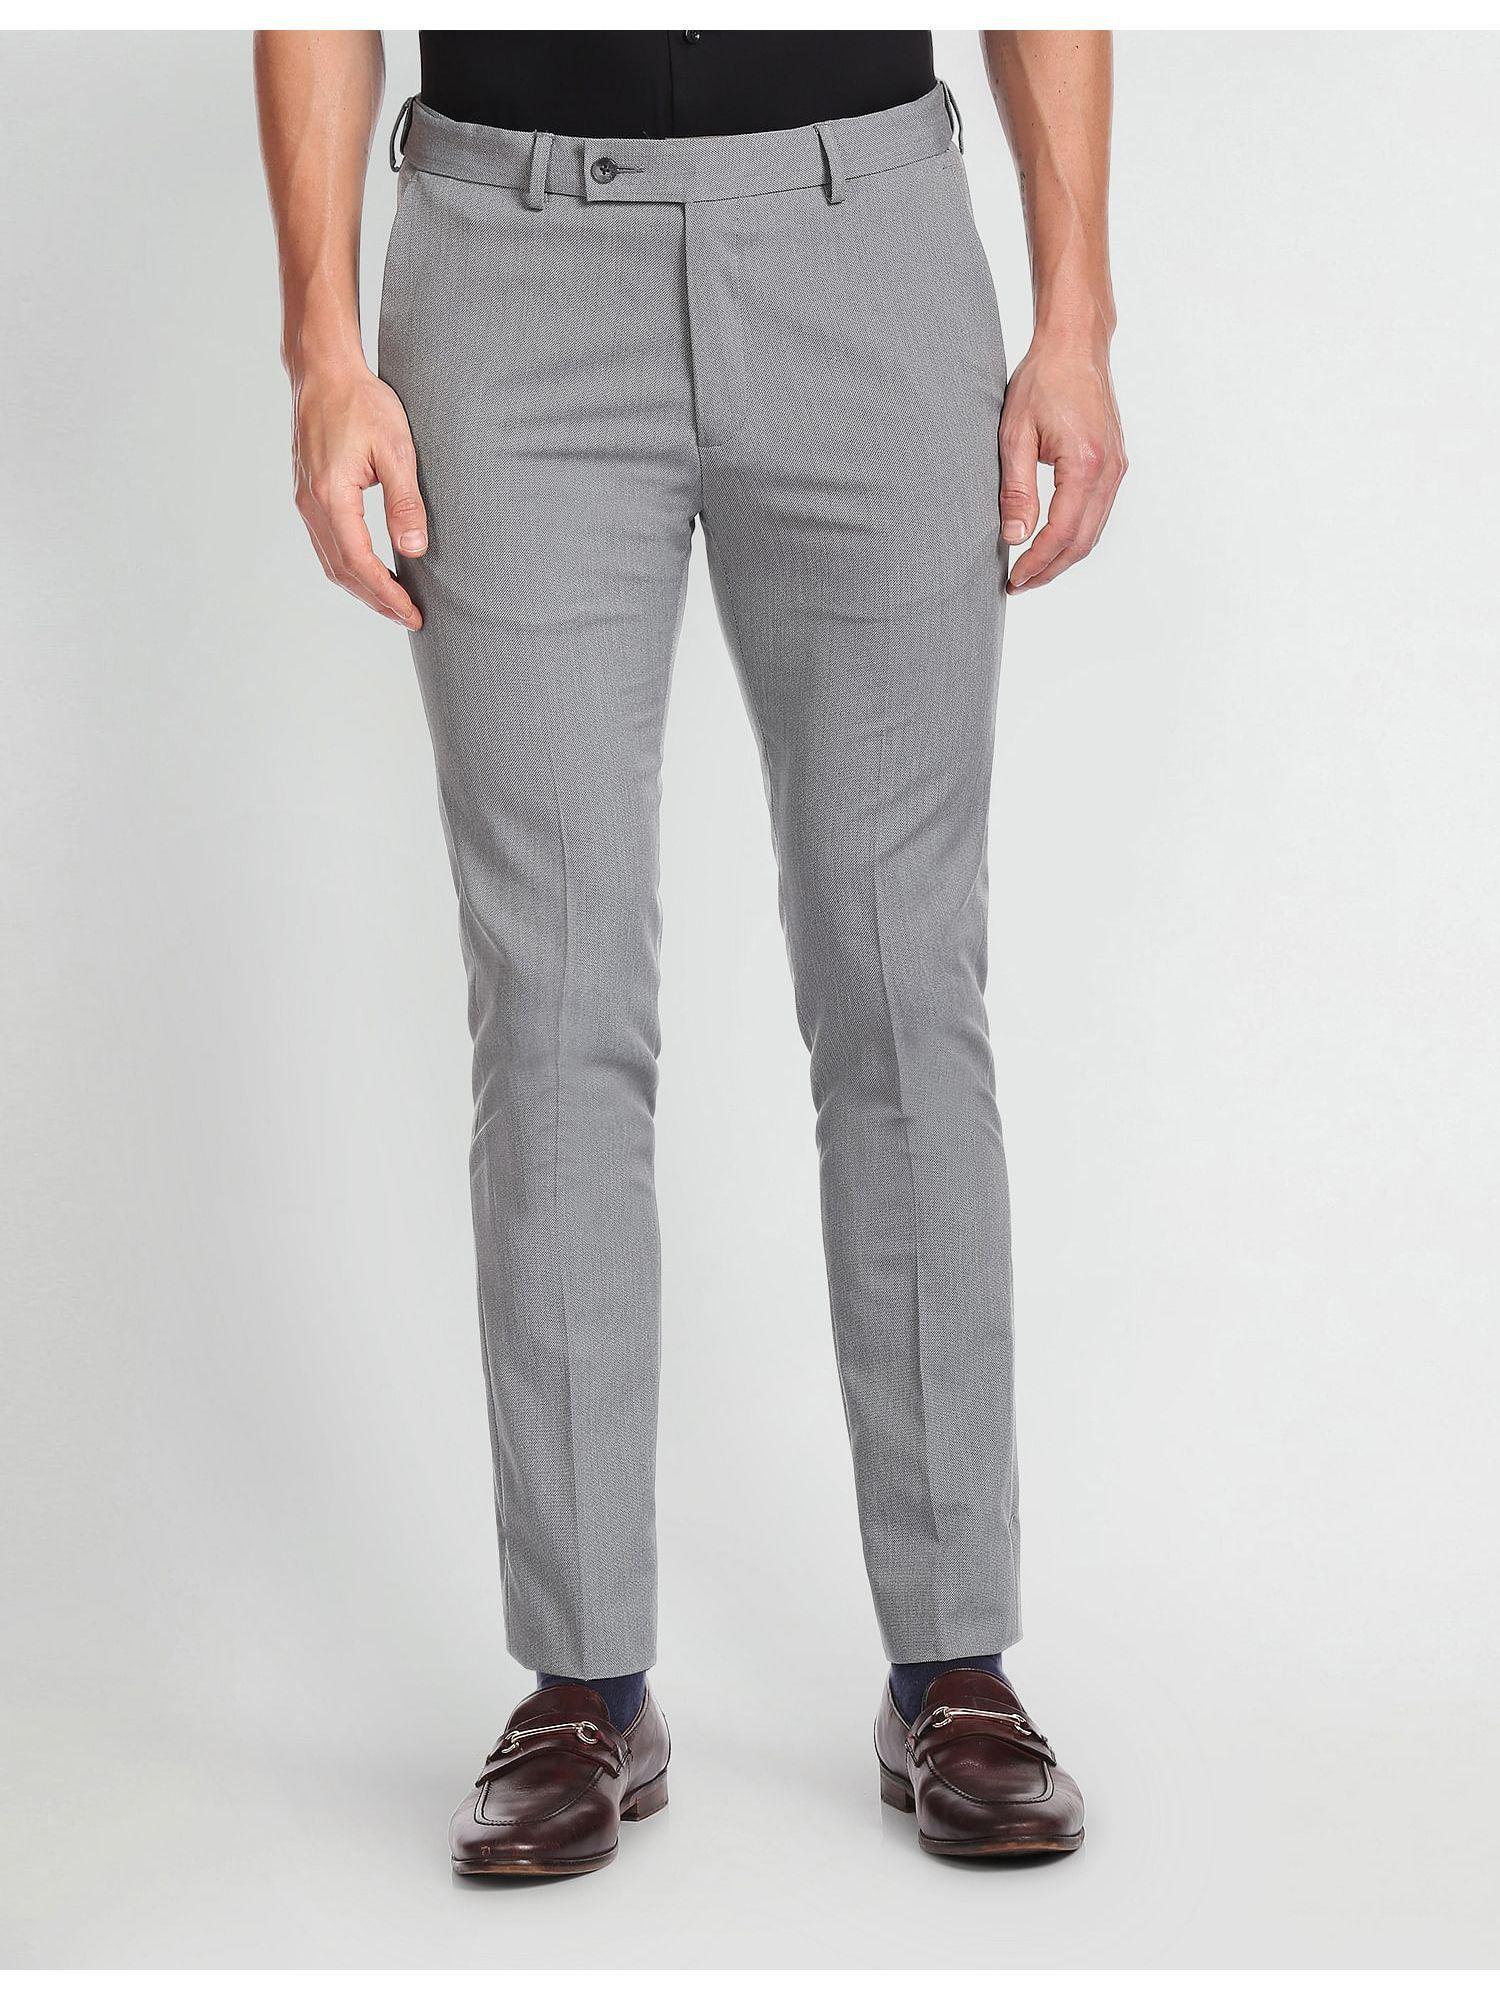 Autoflex Dobby Formal Grey Trousers